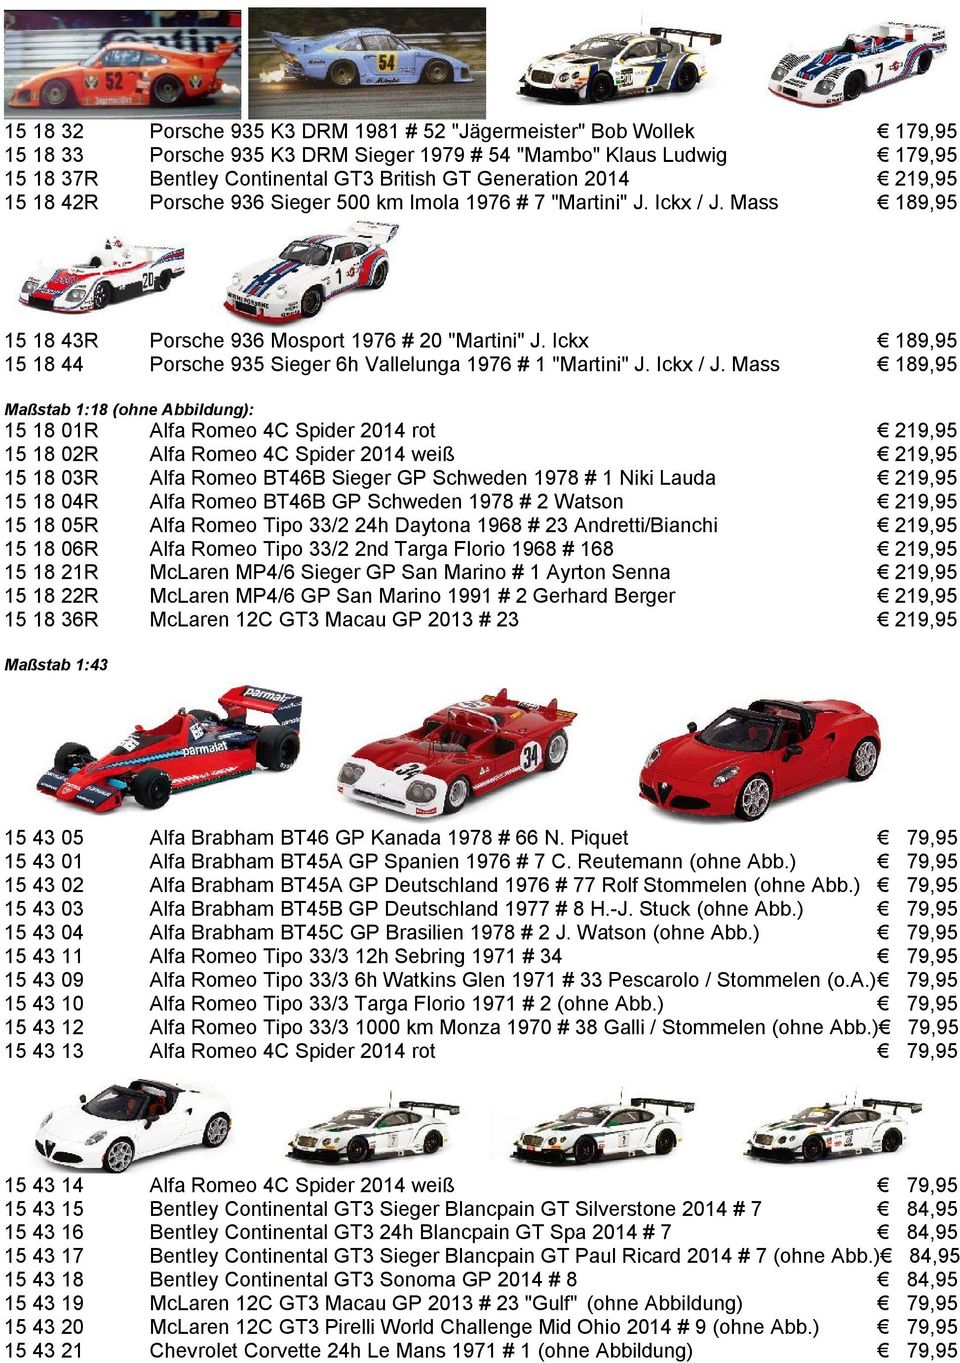 Ickx 189,95 15 18 44 Porsche 935 Sieger 6h Vallelunga 1976 # 1 "Martini" J. Ickx / J.